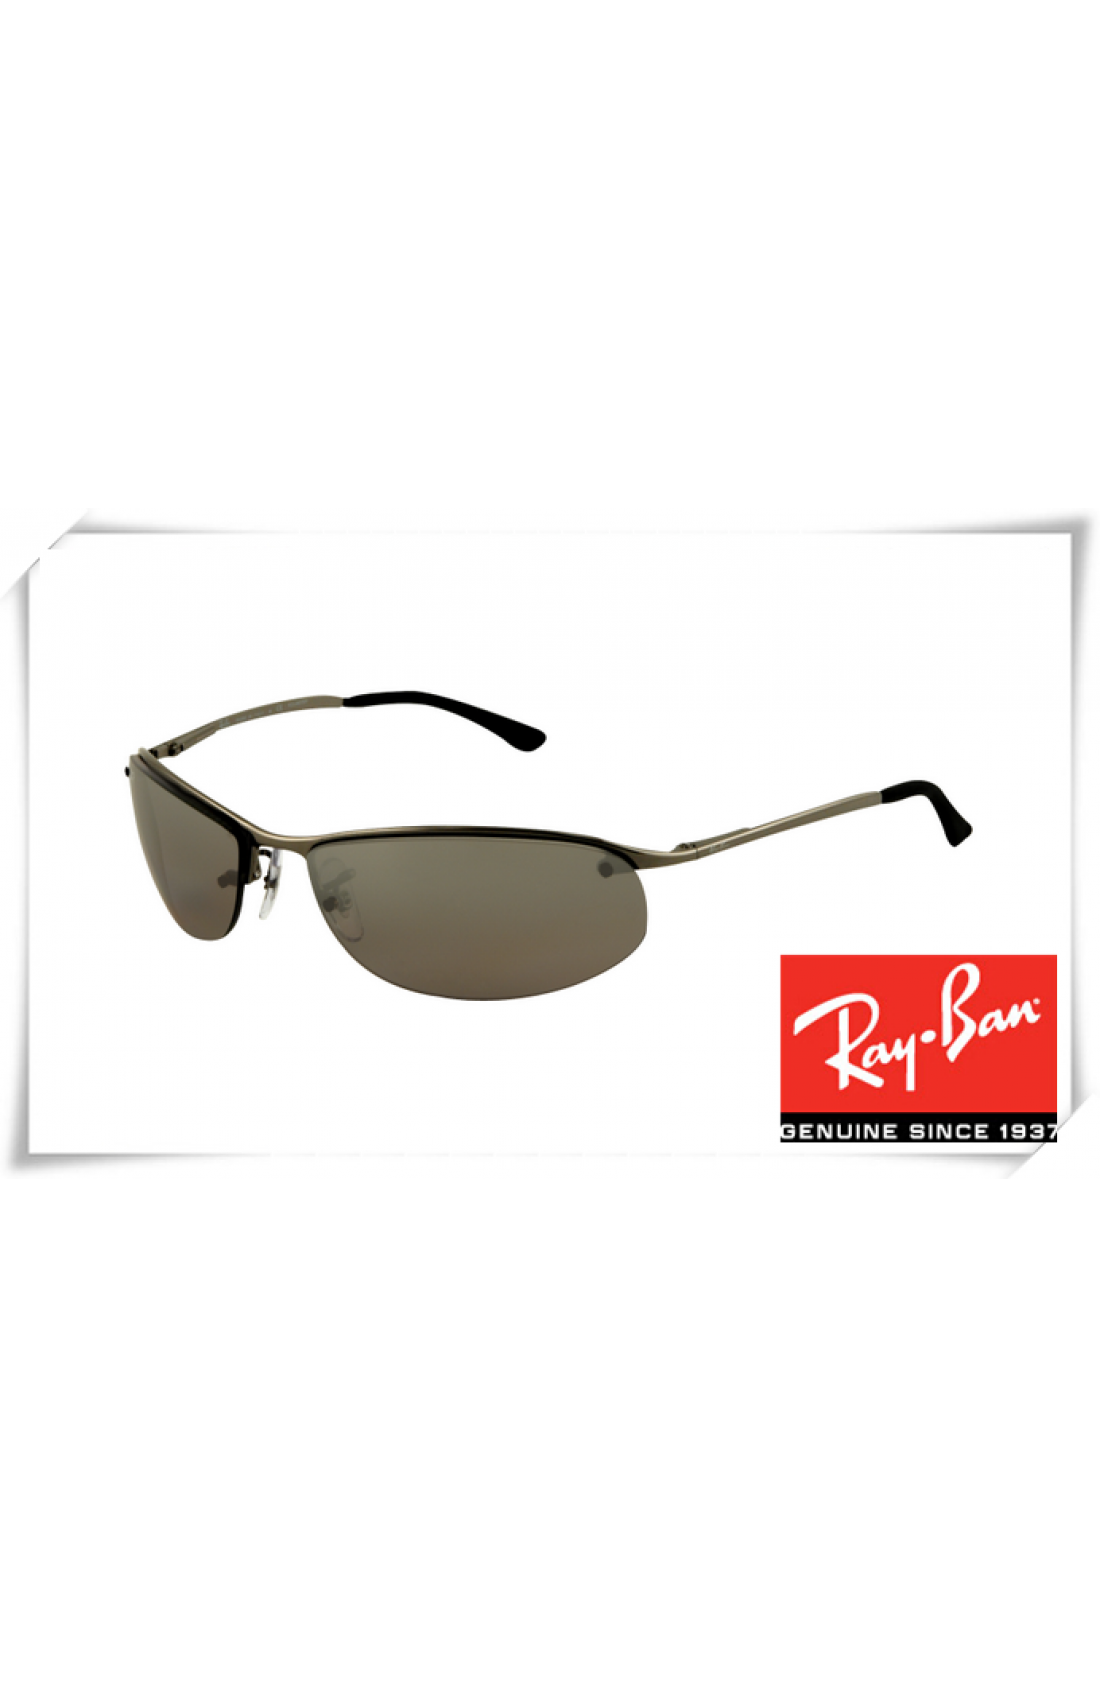 Karakteriseren adelaar voorspelling Cheap Ray Ban RB3179 Top Bar Oval Sunglasses Gunmetal Black Frame Gray Lens